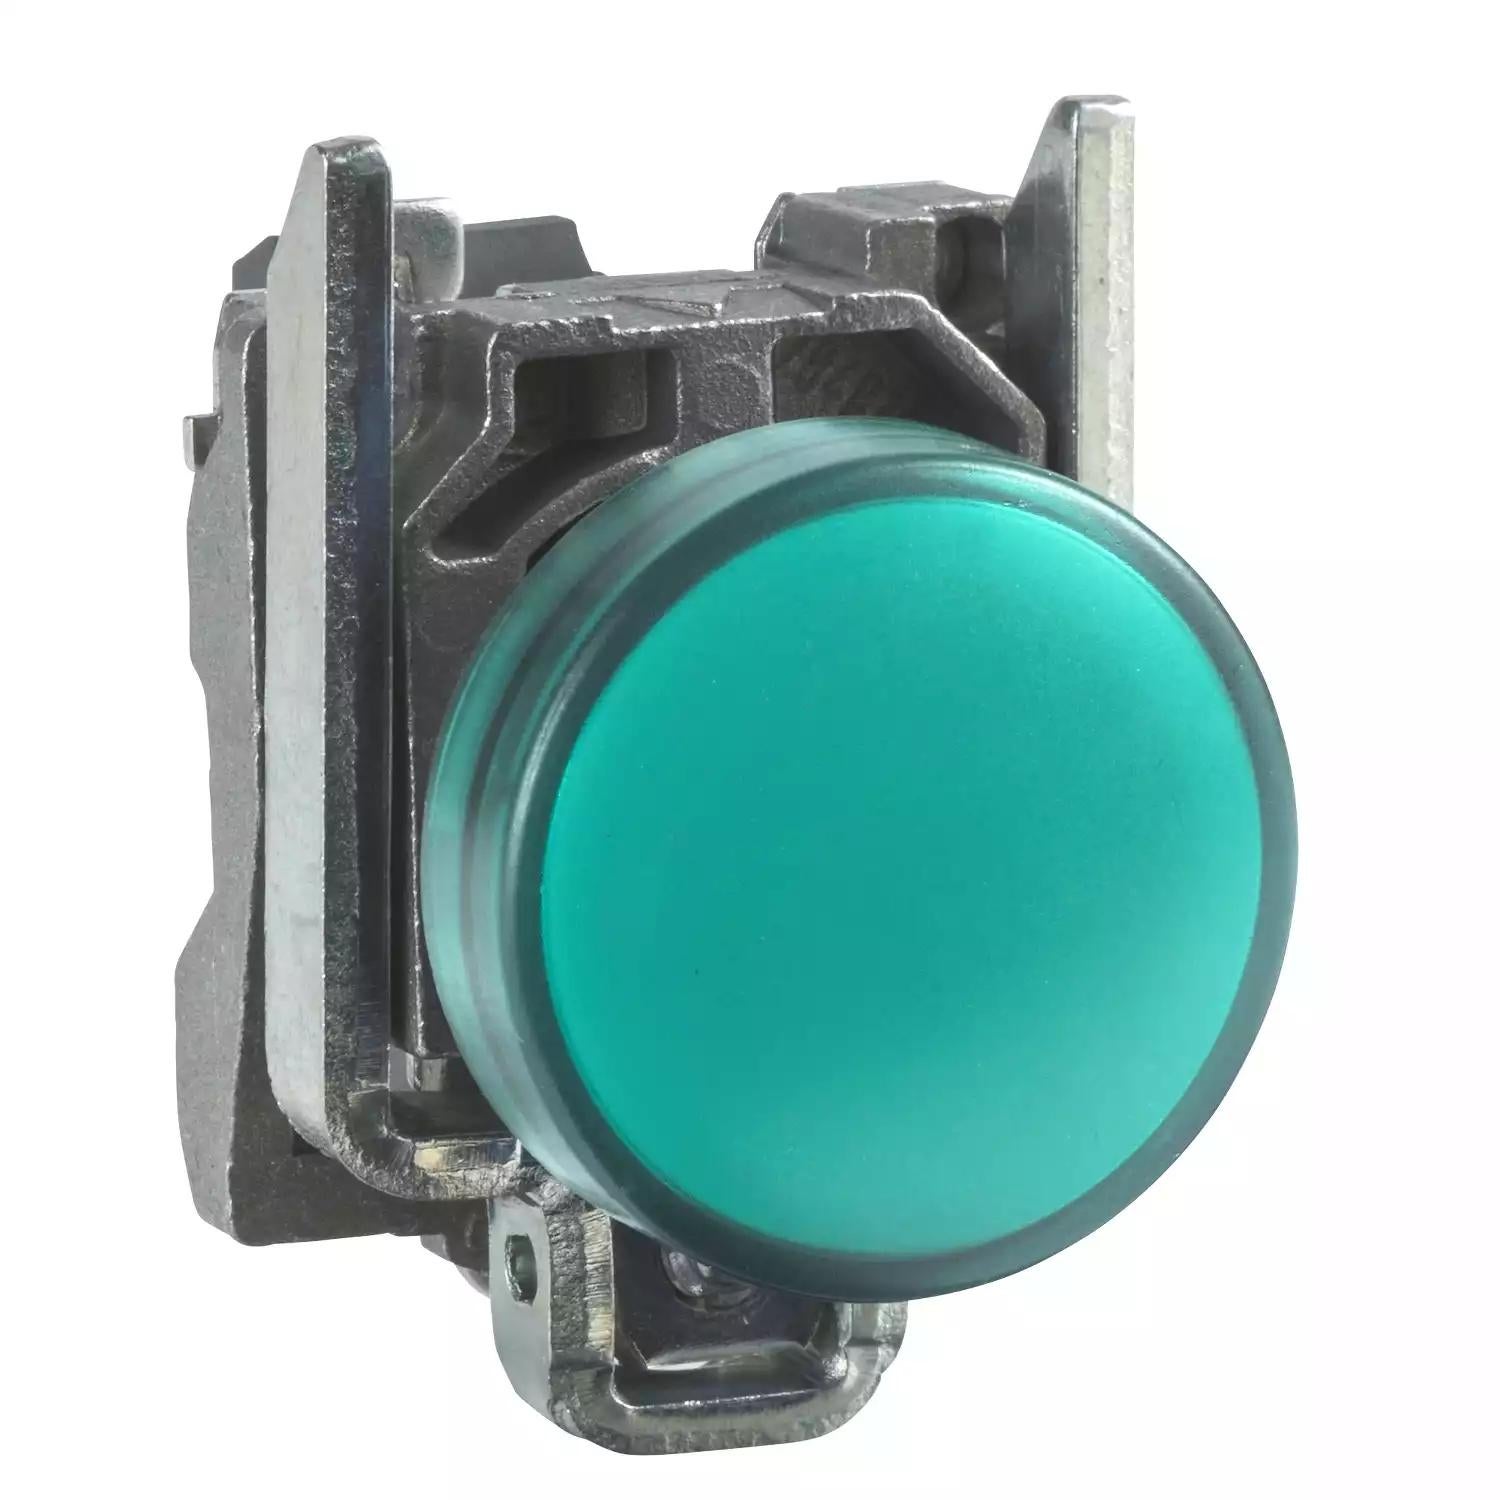 Harmony XB4, Pilot light, metal, green, Ø22, plain lens with integral LED, 230...240 VAC